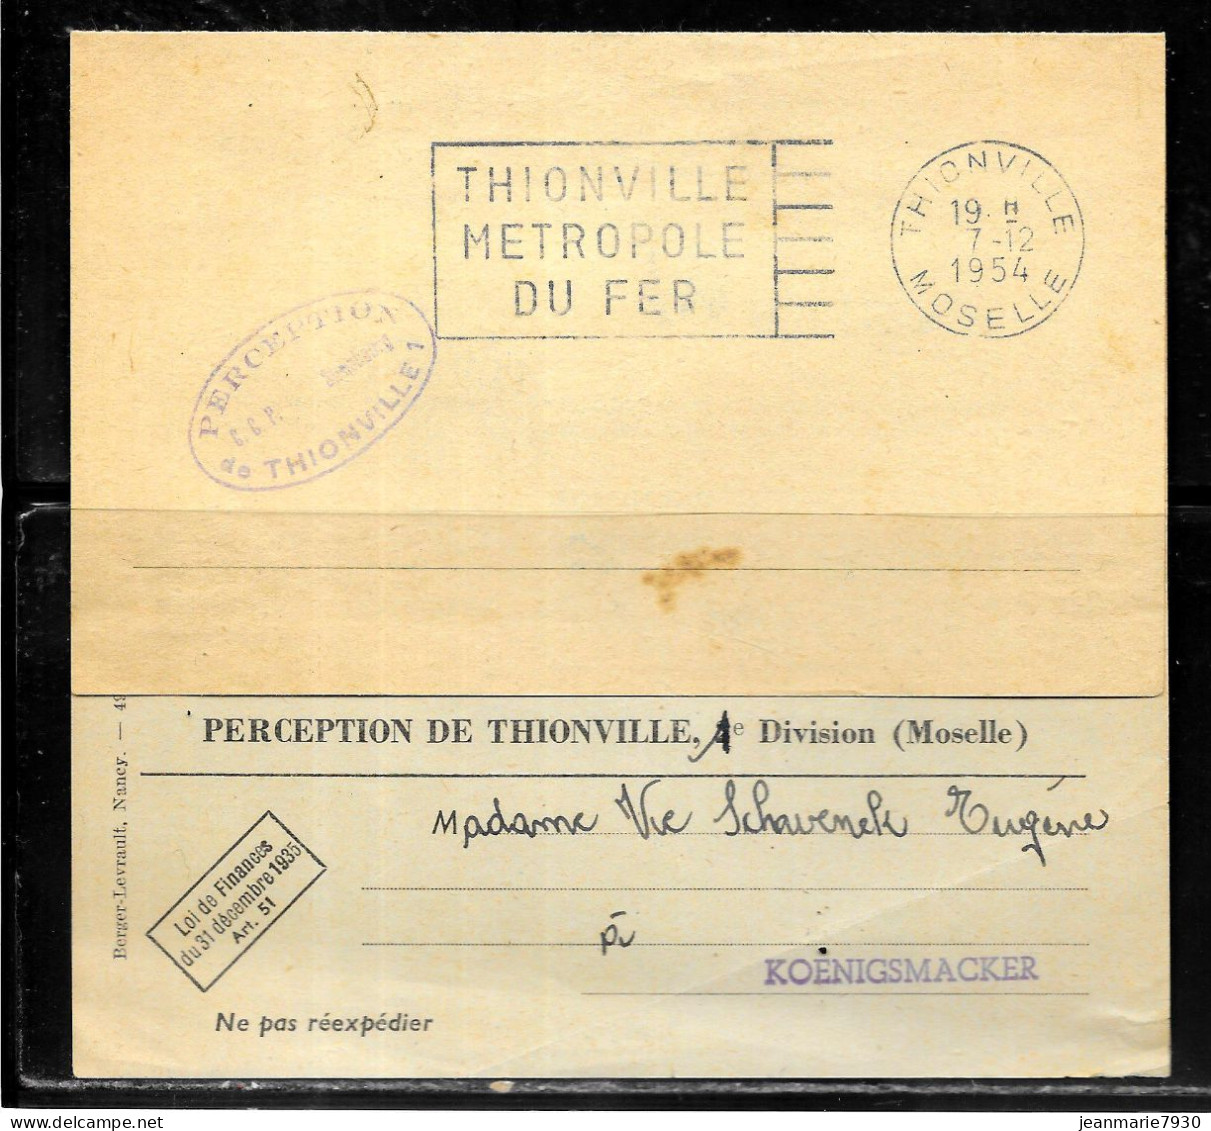 P248 - LETTRE EN FRANCHISE DE THIONVILLE DU 07/12/54 - PERCEPTION C.C.P STRASBOURG - Civil Frank Covers